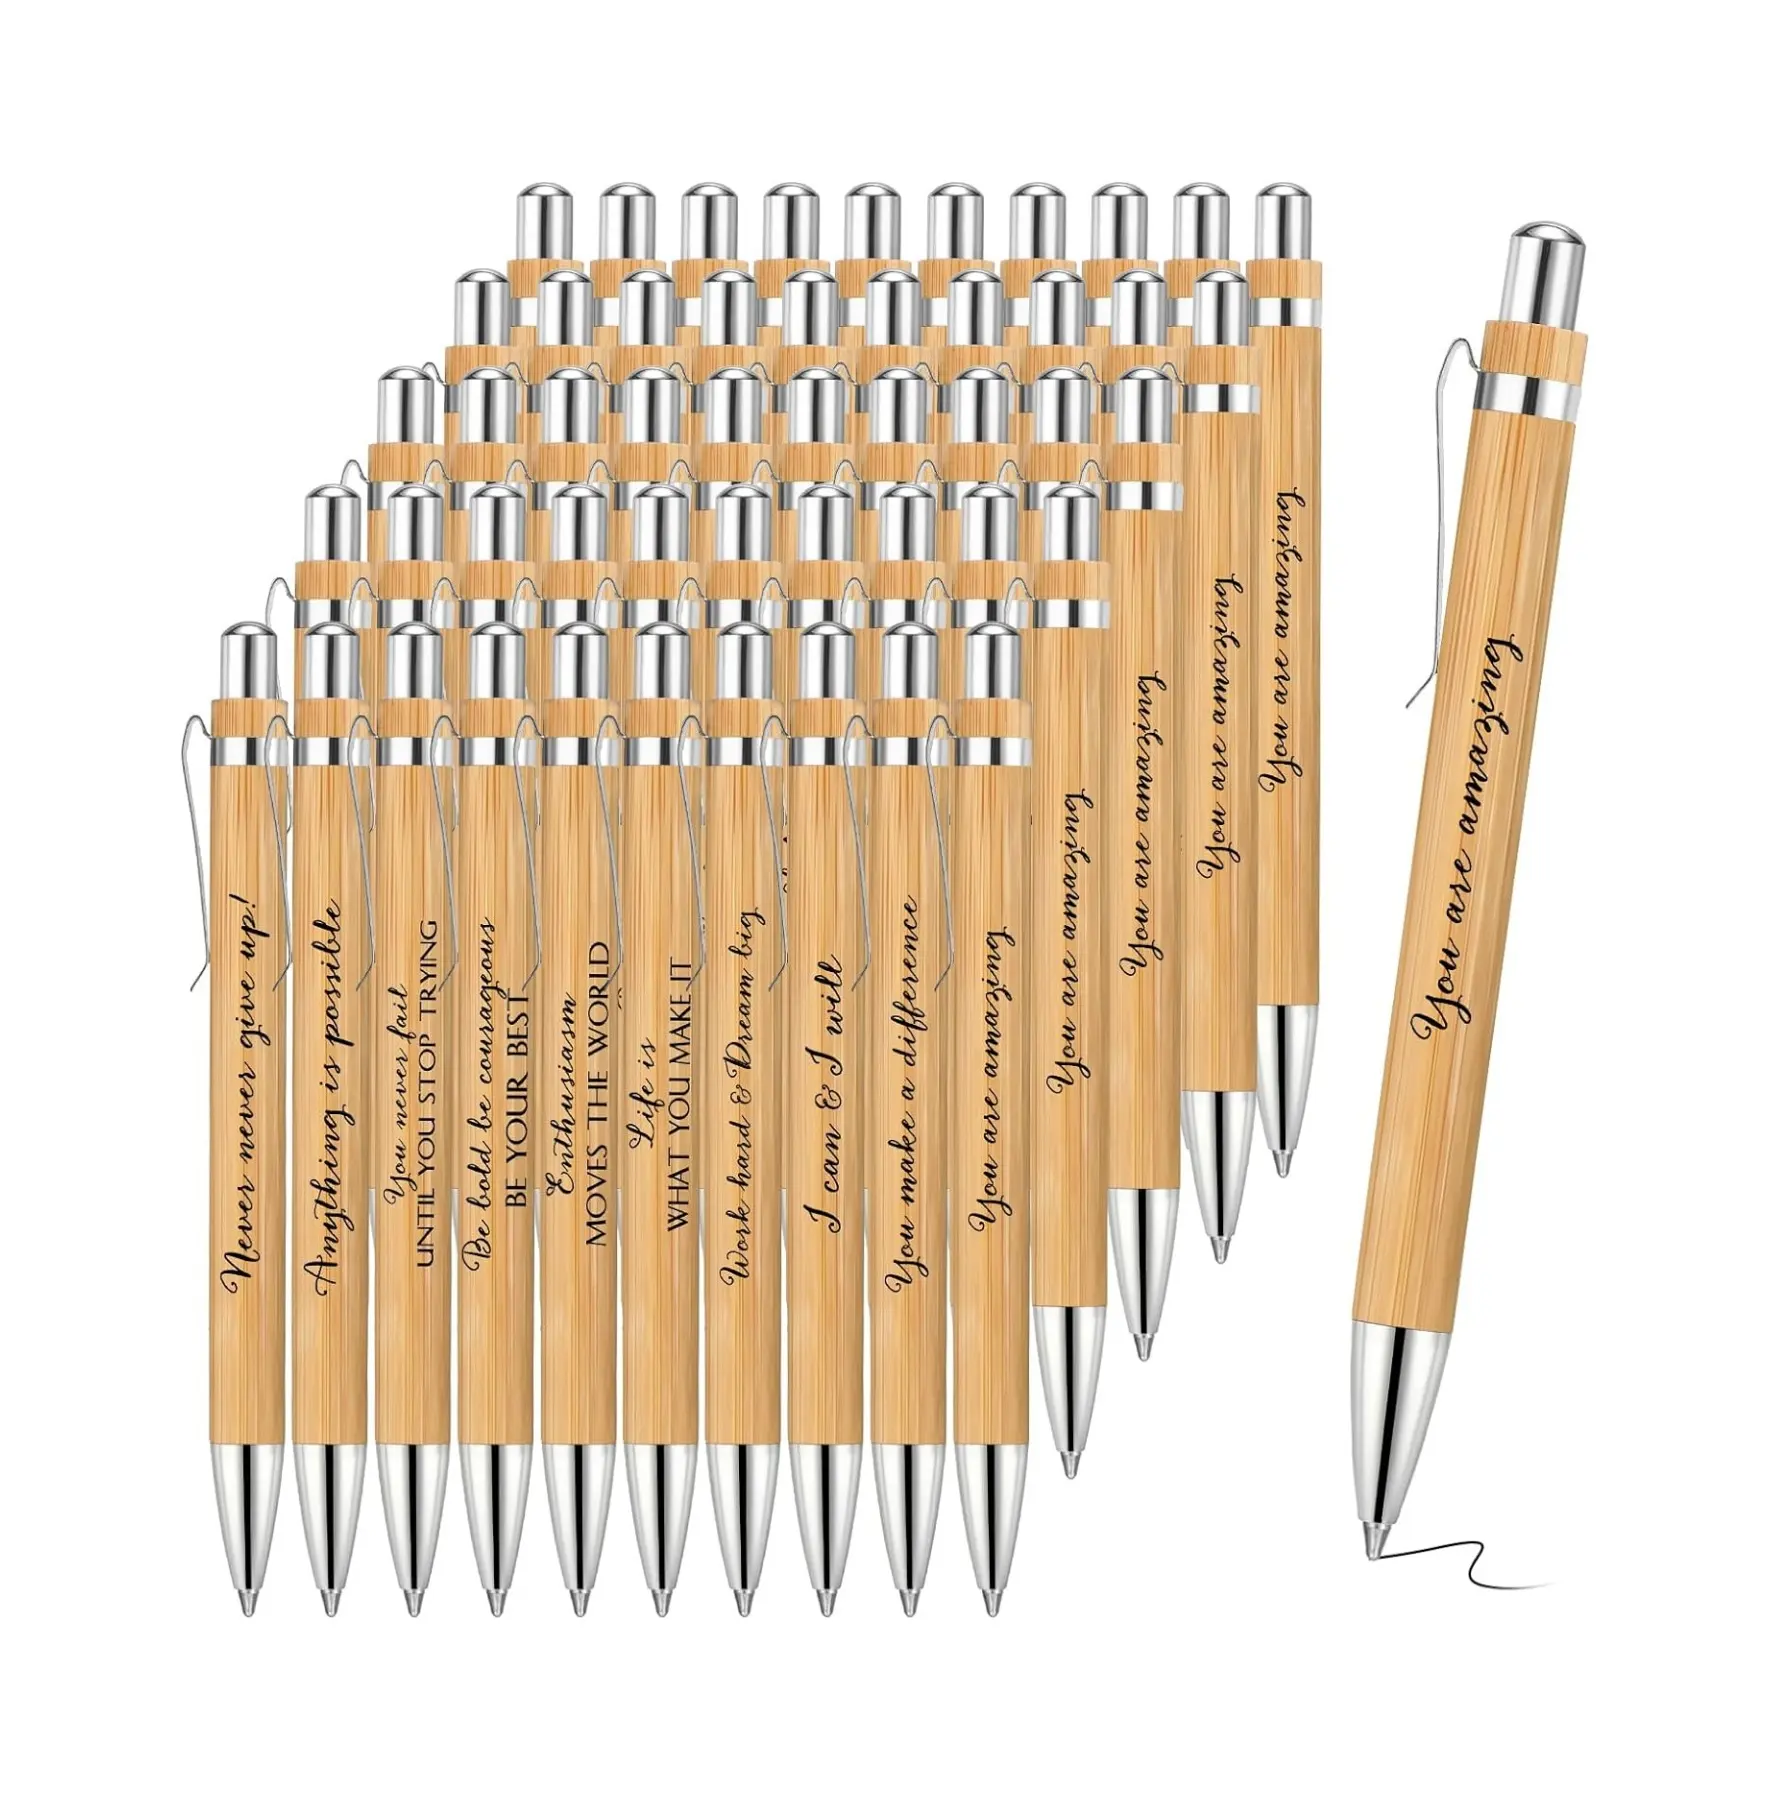 Inspirational Quote Bamboo Pen Bulk Motivational Wooden Pen Black Ink Ballpoint Pen School Office Supplies Appreciation Gifts